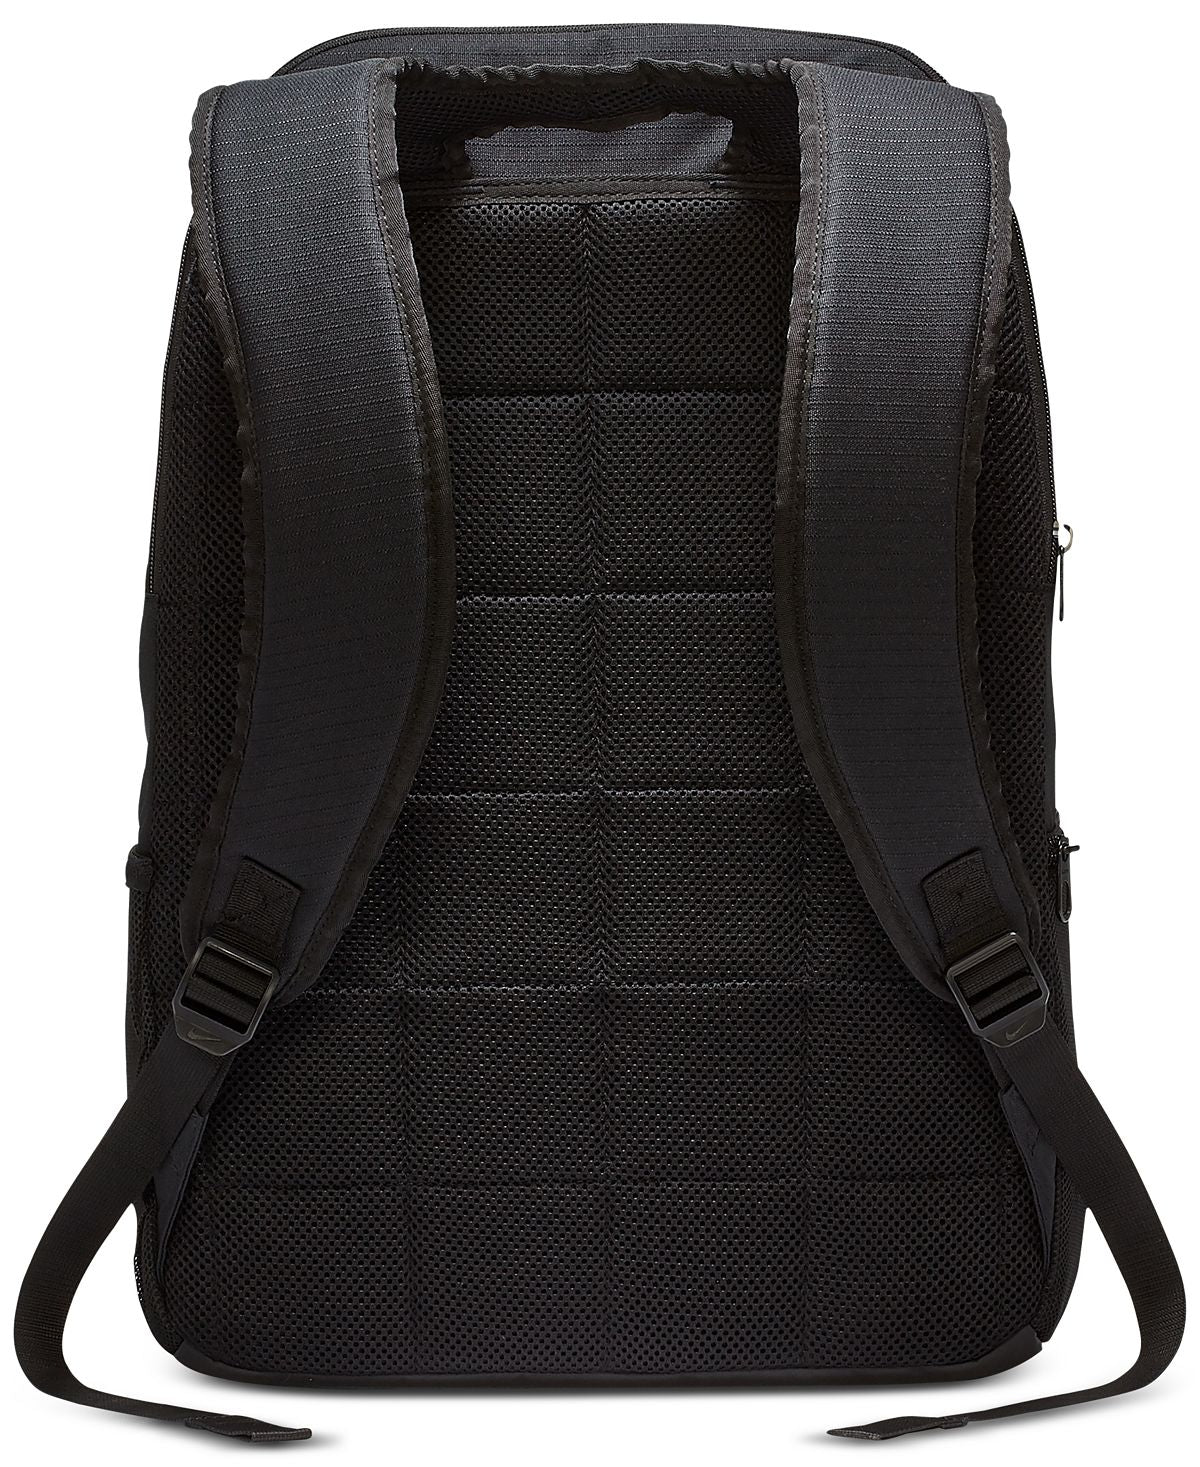 Nike Extra-large Backpack Black